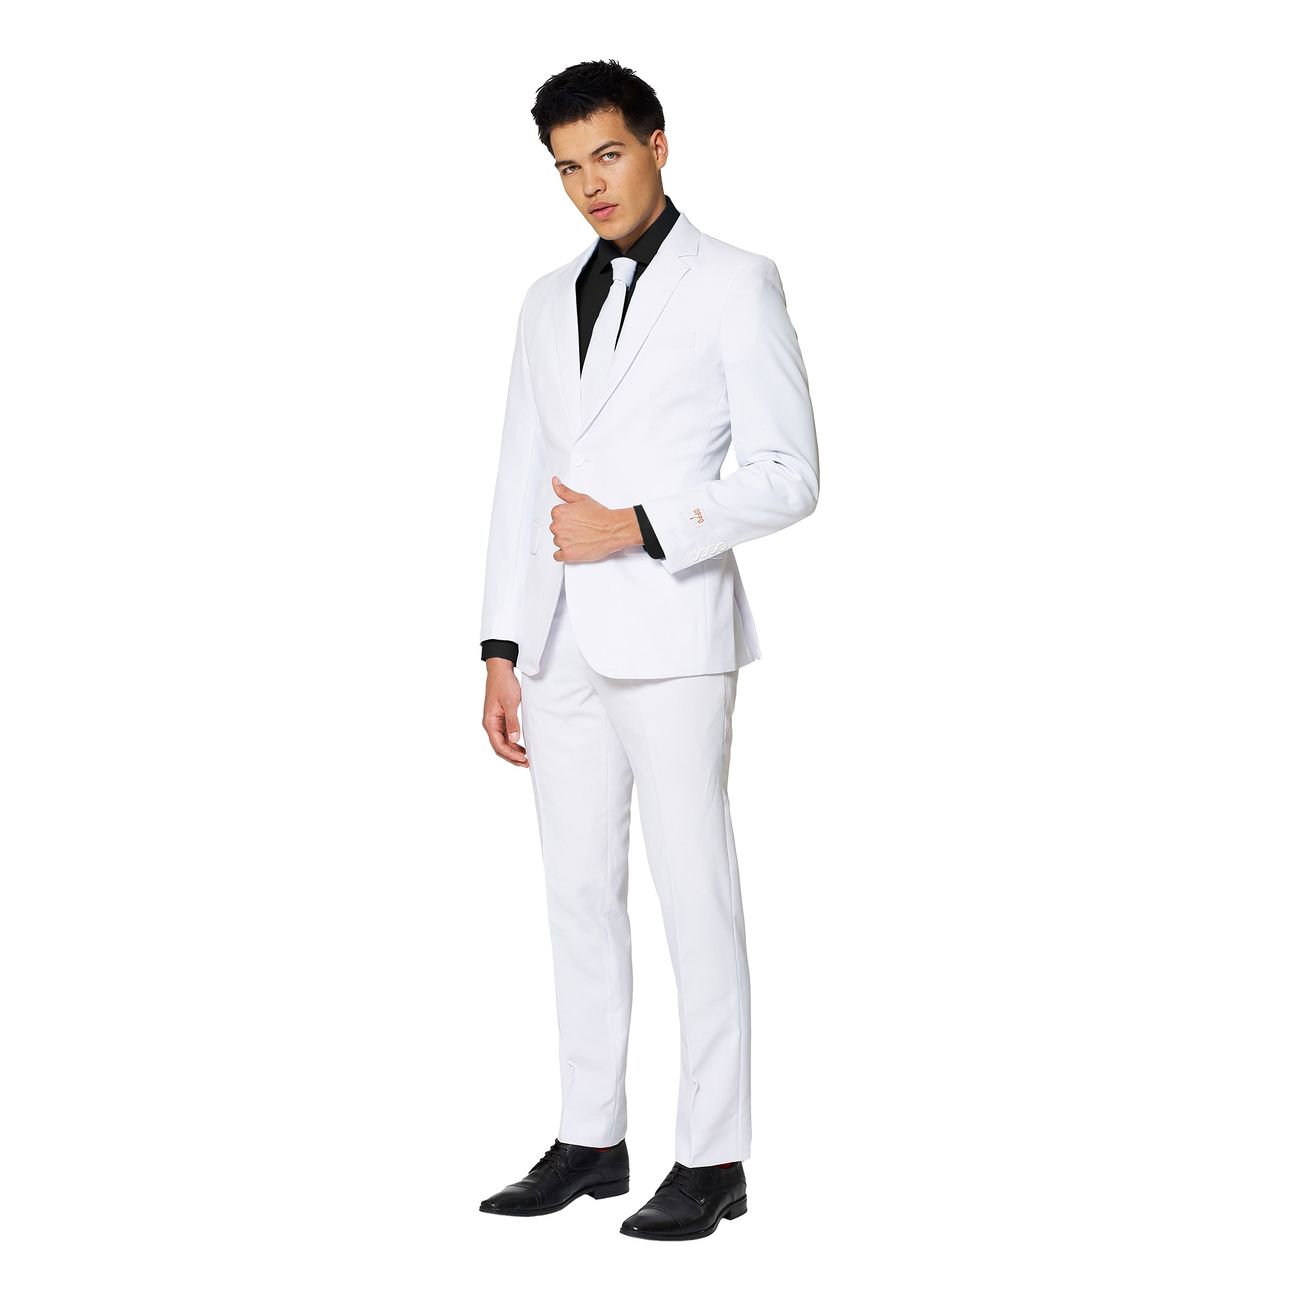 opposuits-white-knight-kostym-31871-5